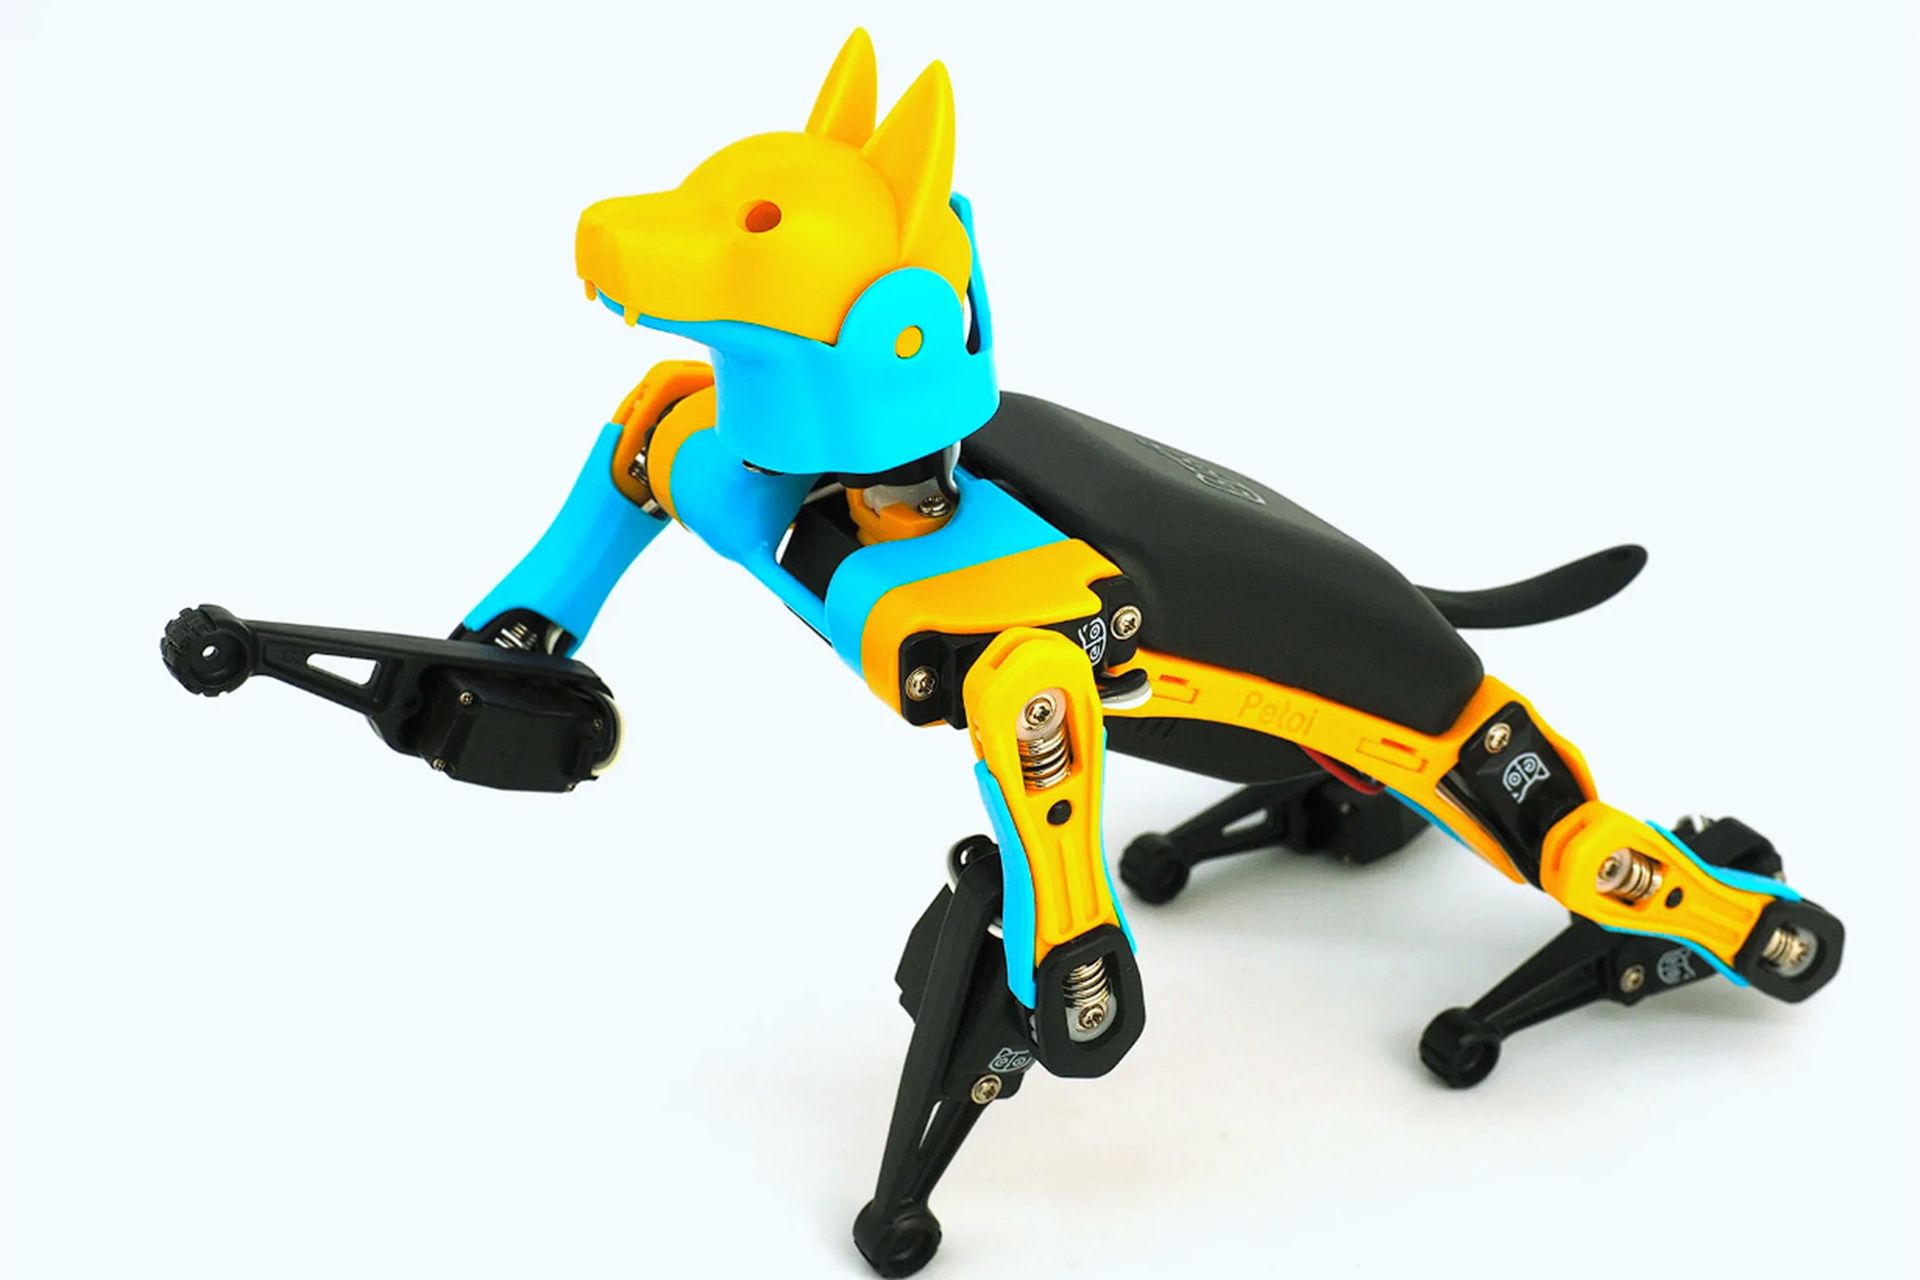 سگ رباتیک Buddy به رنگ مشکی زرد و آبی در حال که دست راستش بالا است